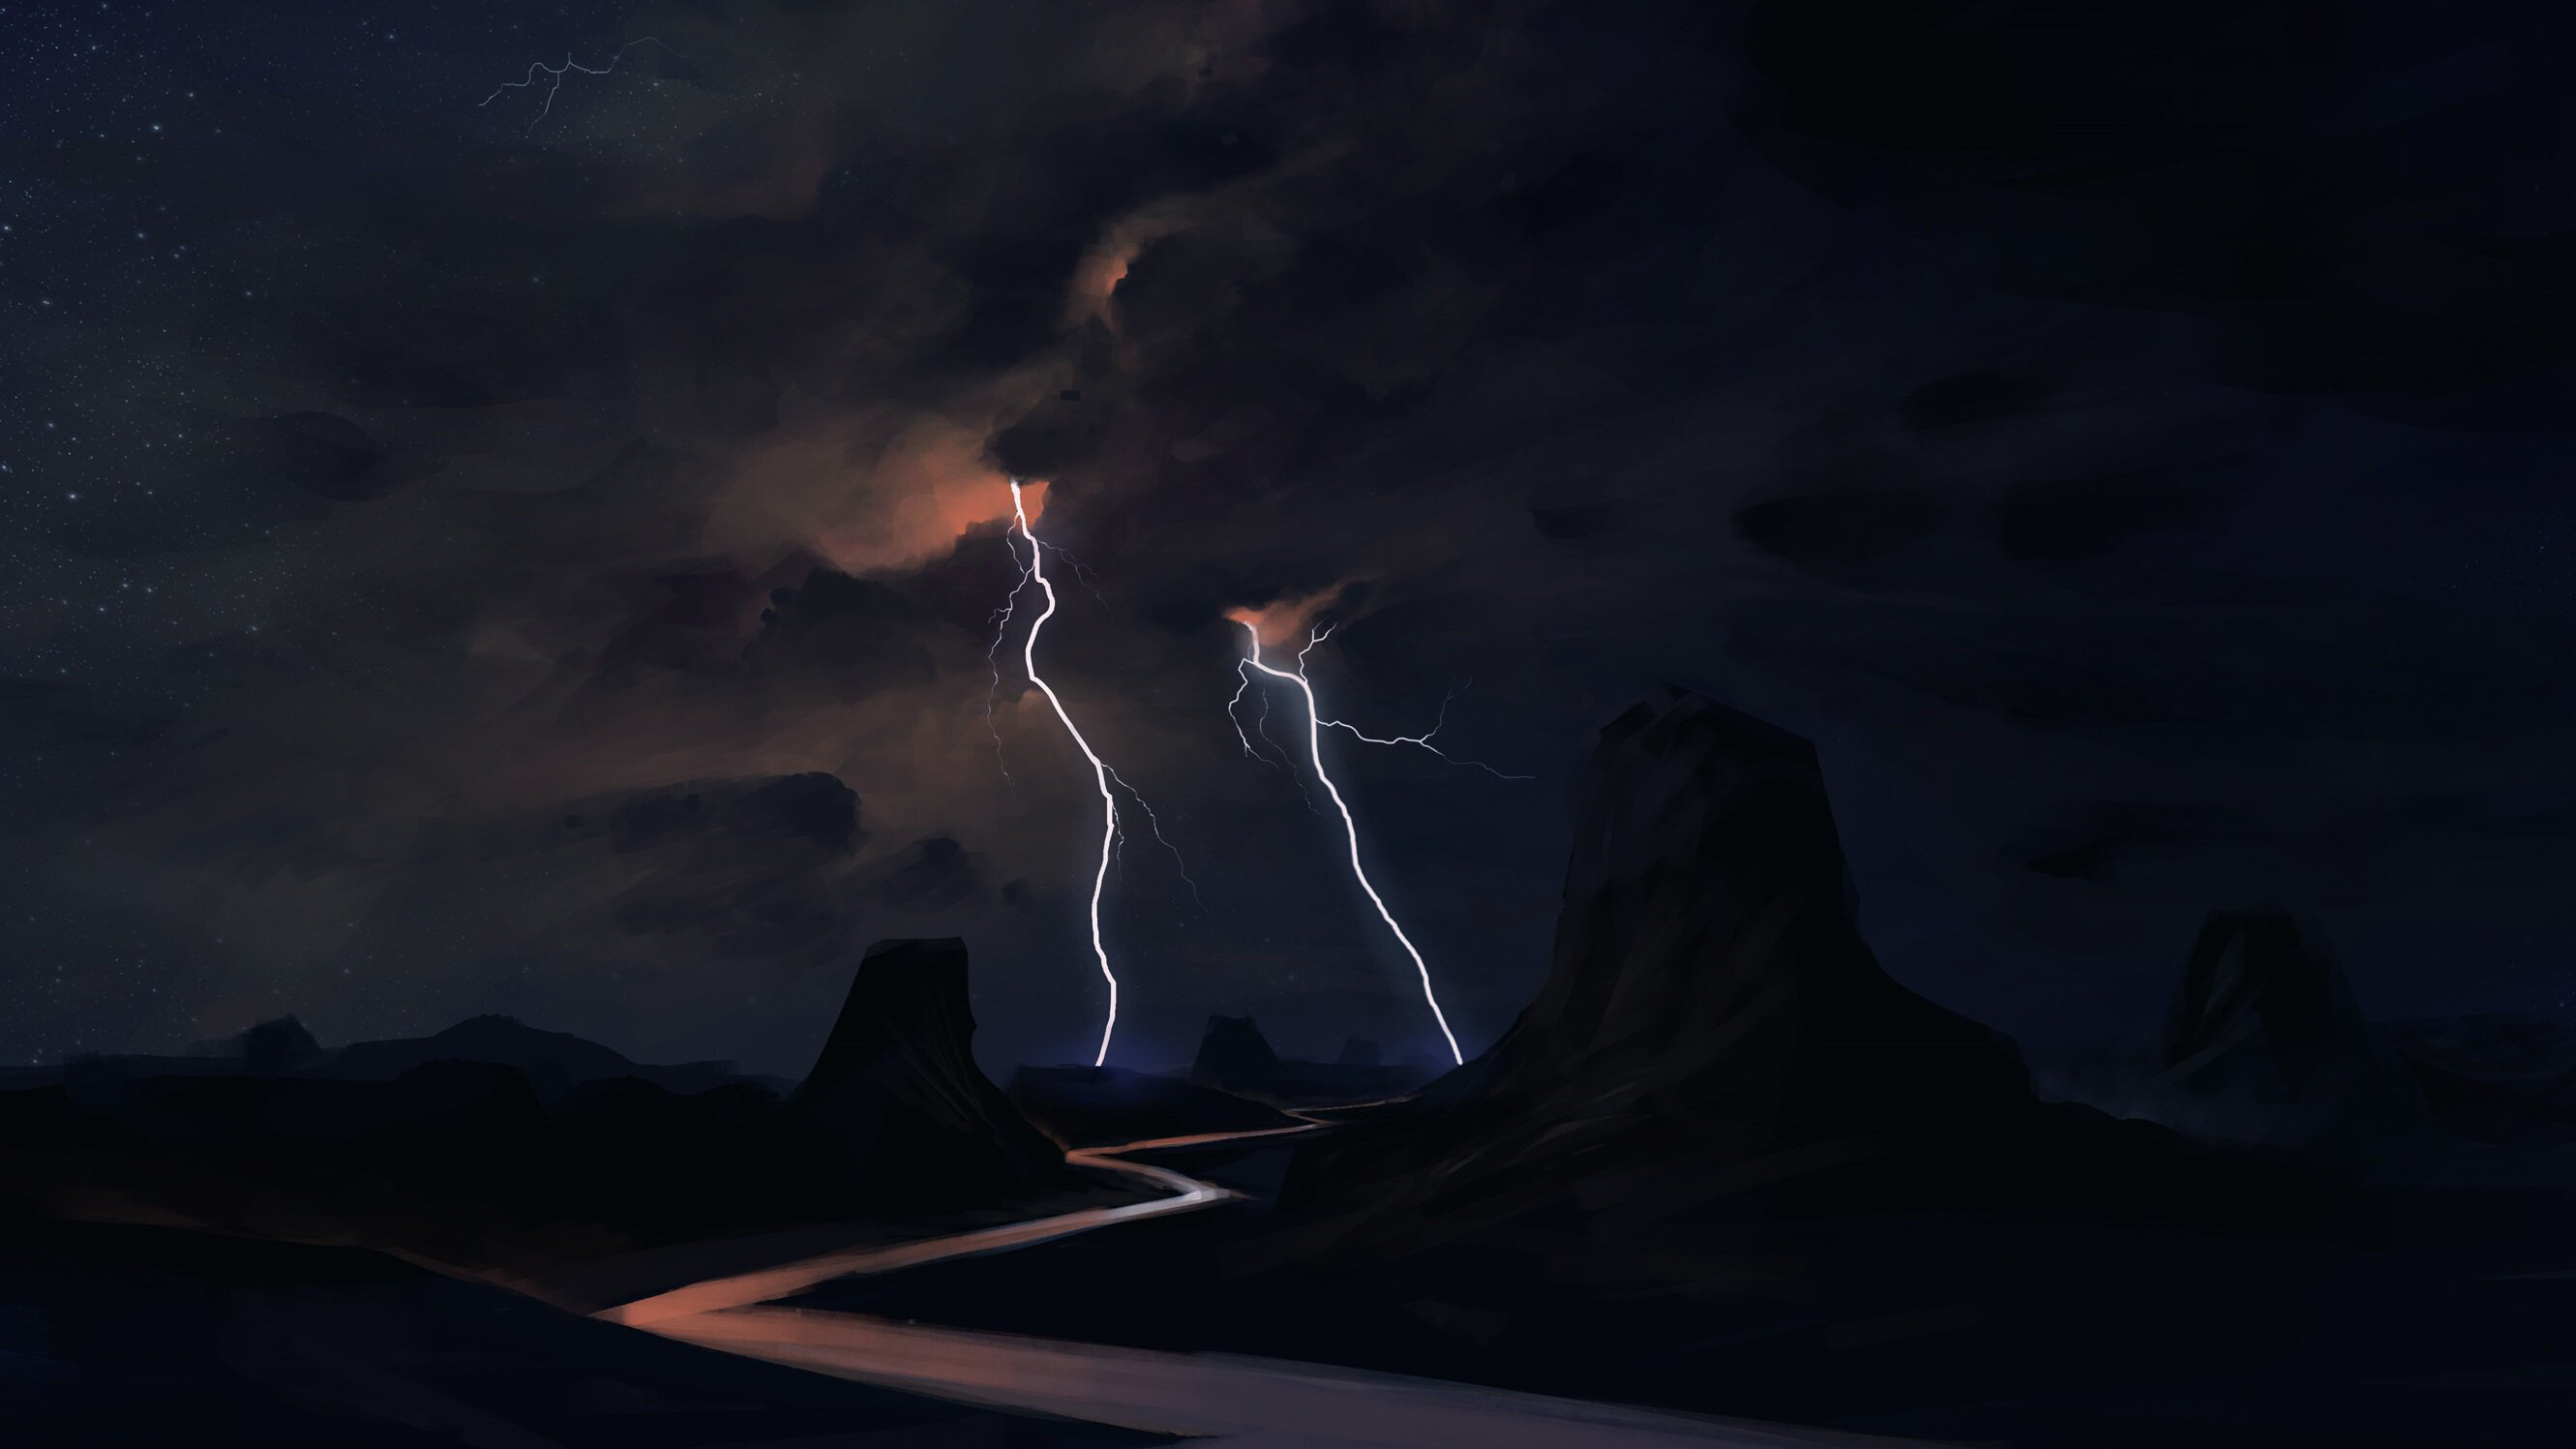 Lightning on the road, Full HD wallpaper, Captivating visuals, Breathtaking landscape, 2670x1500 HD Desktop